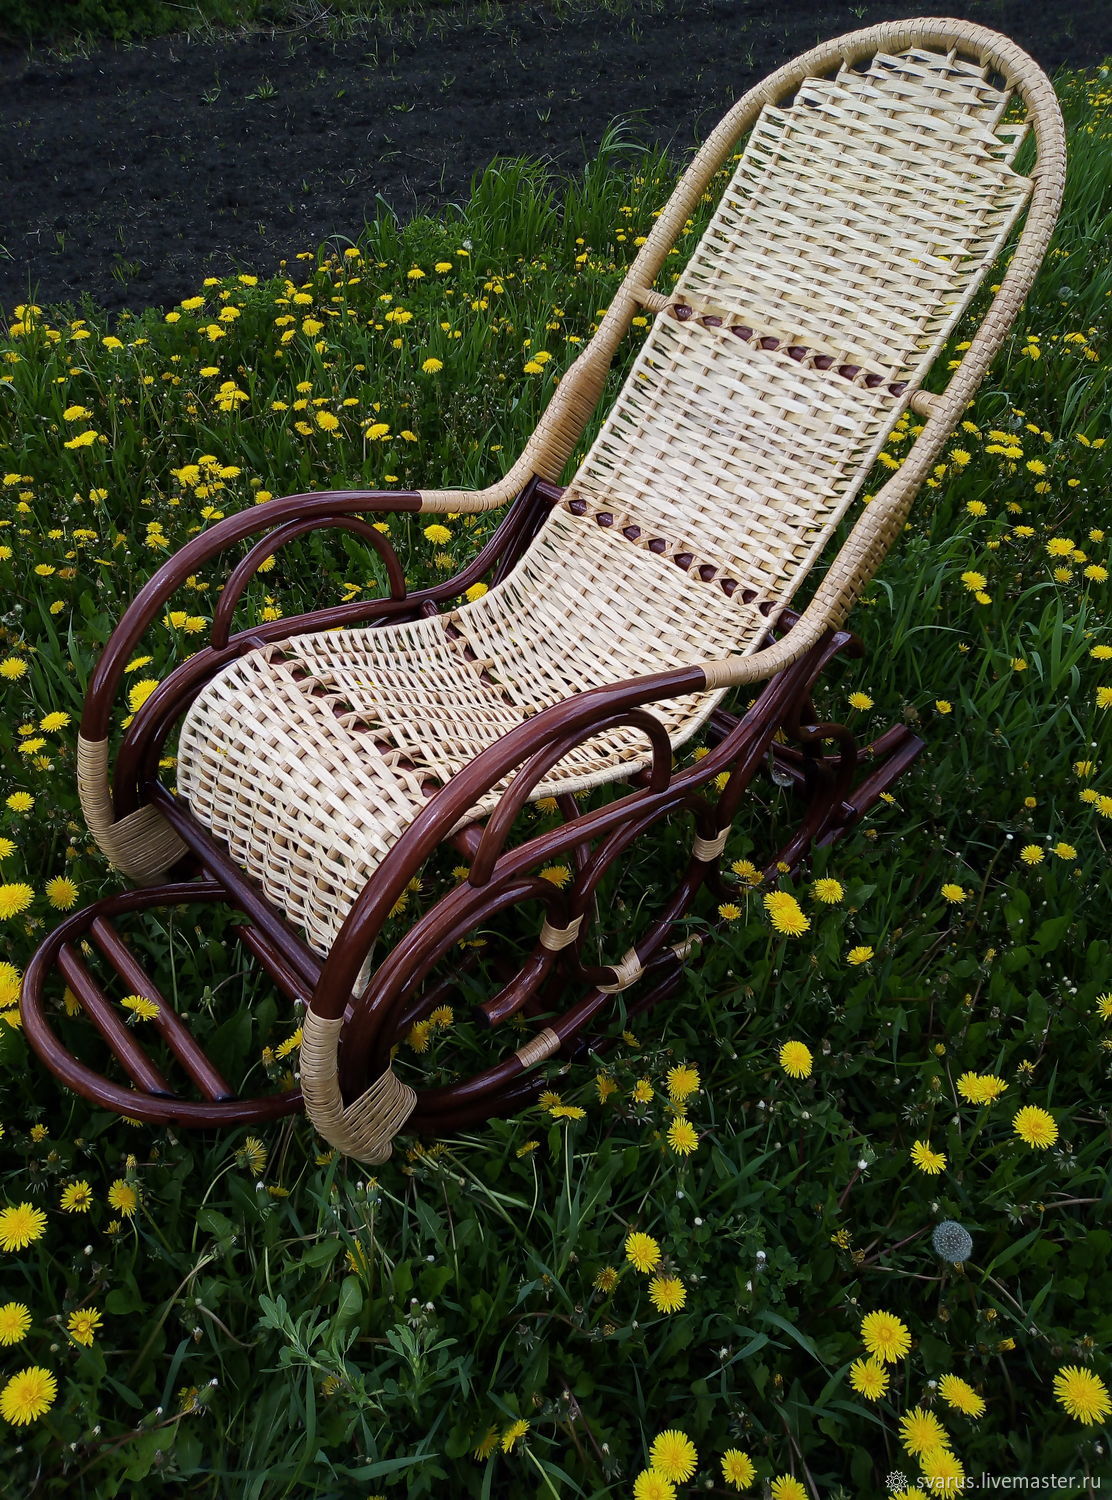 кресло качалка белое плетеное